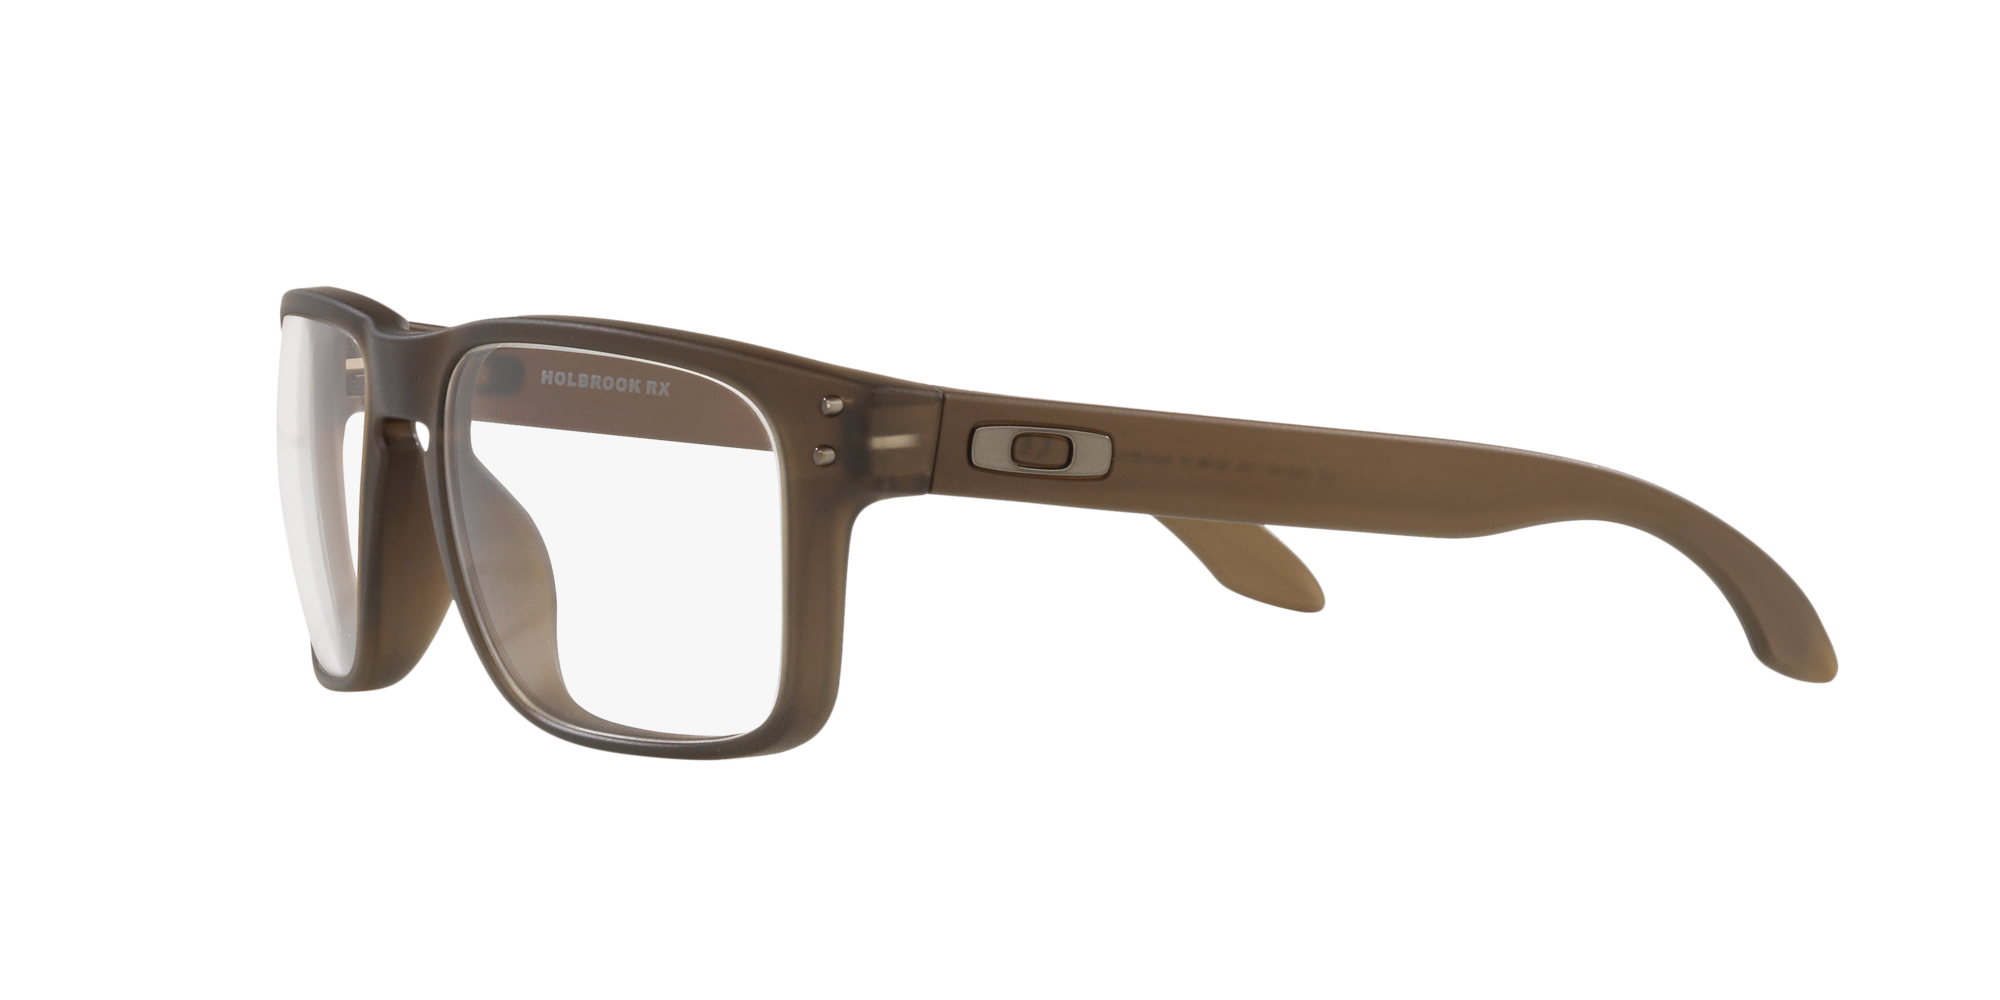 Das Bild zeigt die Korrektionsbrille OX8032 803202 von der Marke Oakley  in  grau  rauch satiniert.